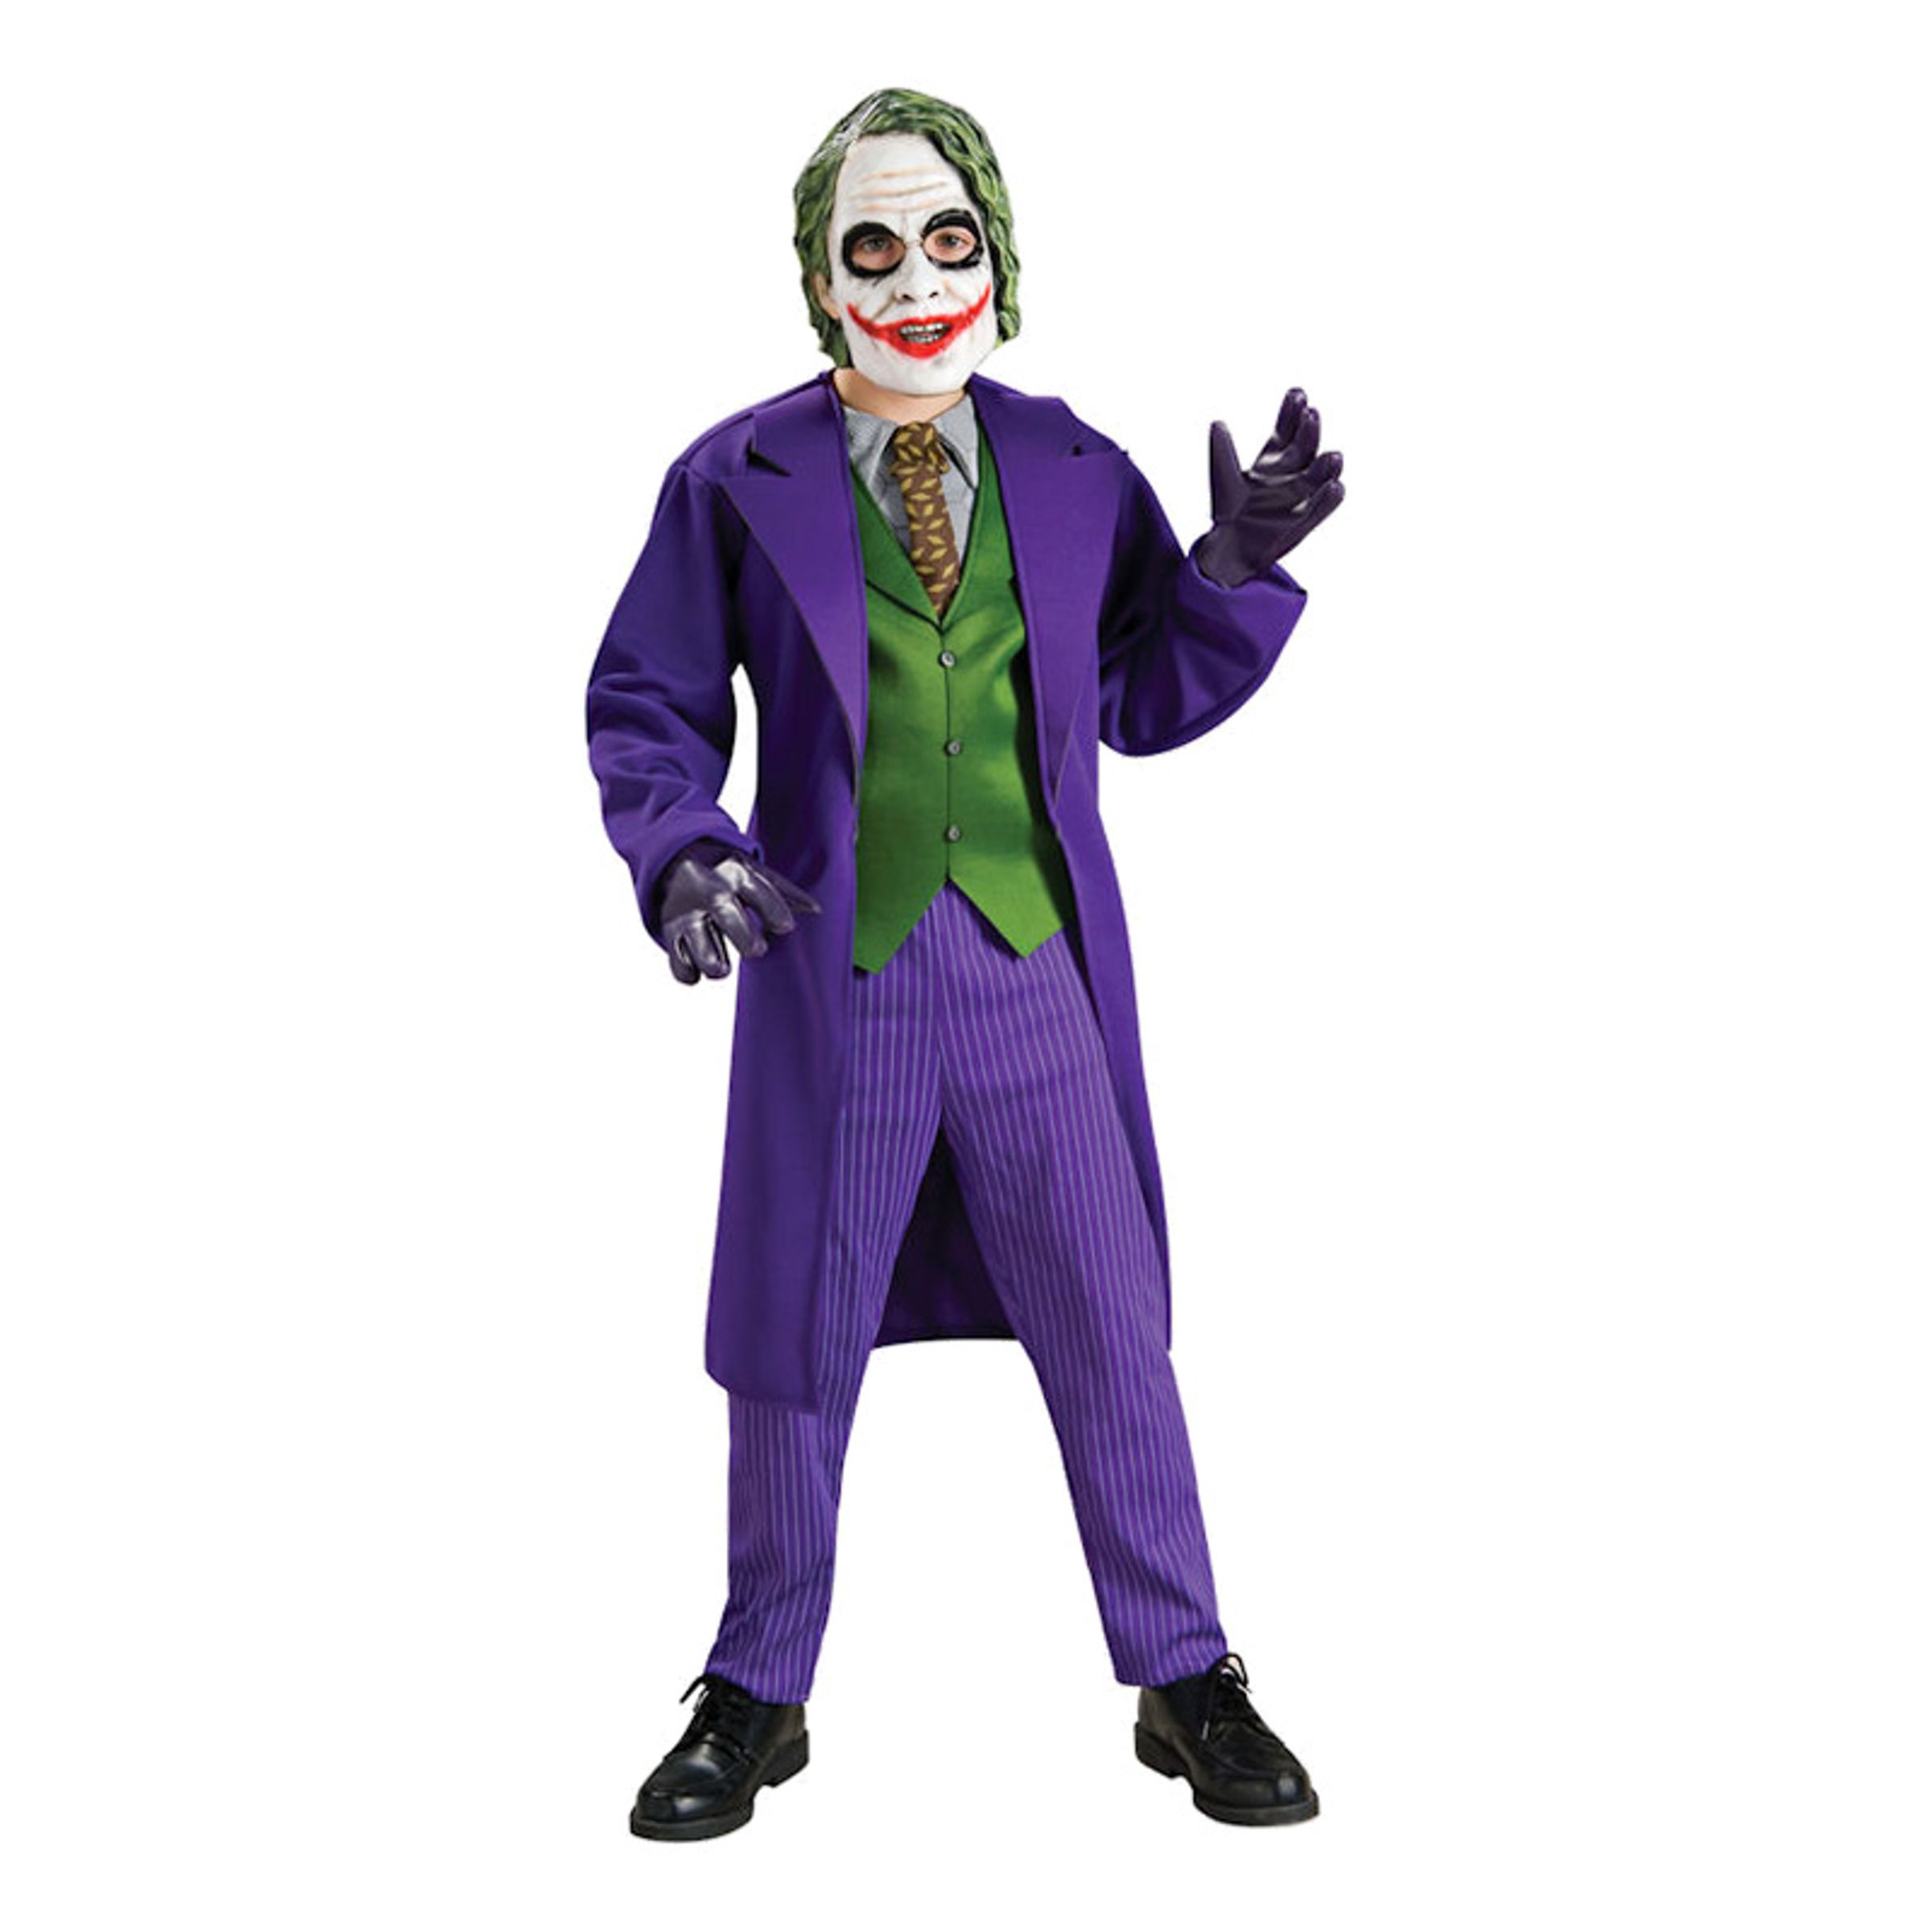 Jokern Deluxe Barn Maskeraddräkt - Large